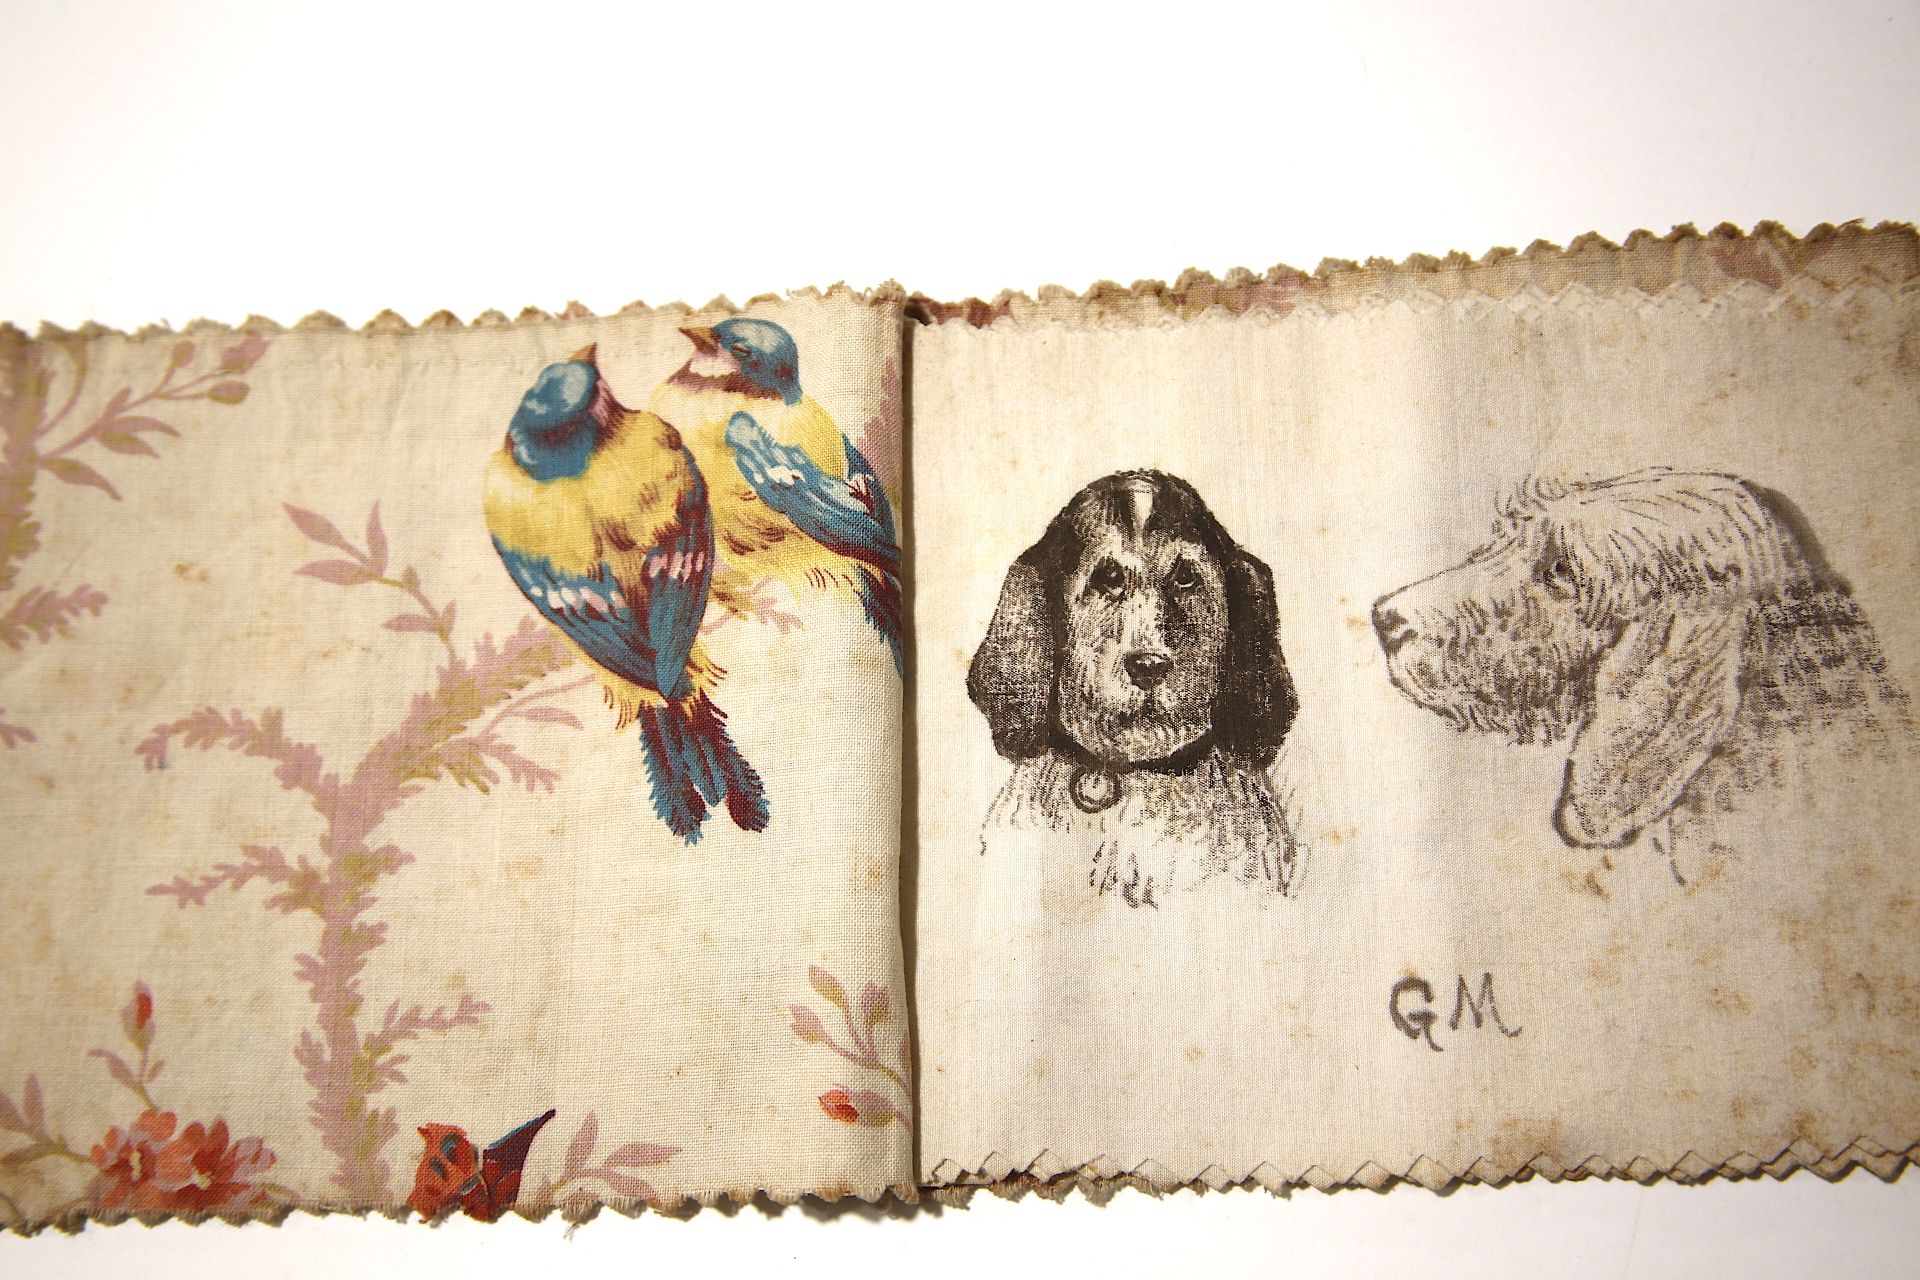 Null 
(古斯塔夫-莫勒)。
动物画的笔记本（19世纪末）。
彩色印刷的布质笔记本(155 mm x 190 mm)。介绍了6幅布面水墨画（猫、狗、驴...&hellip;